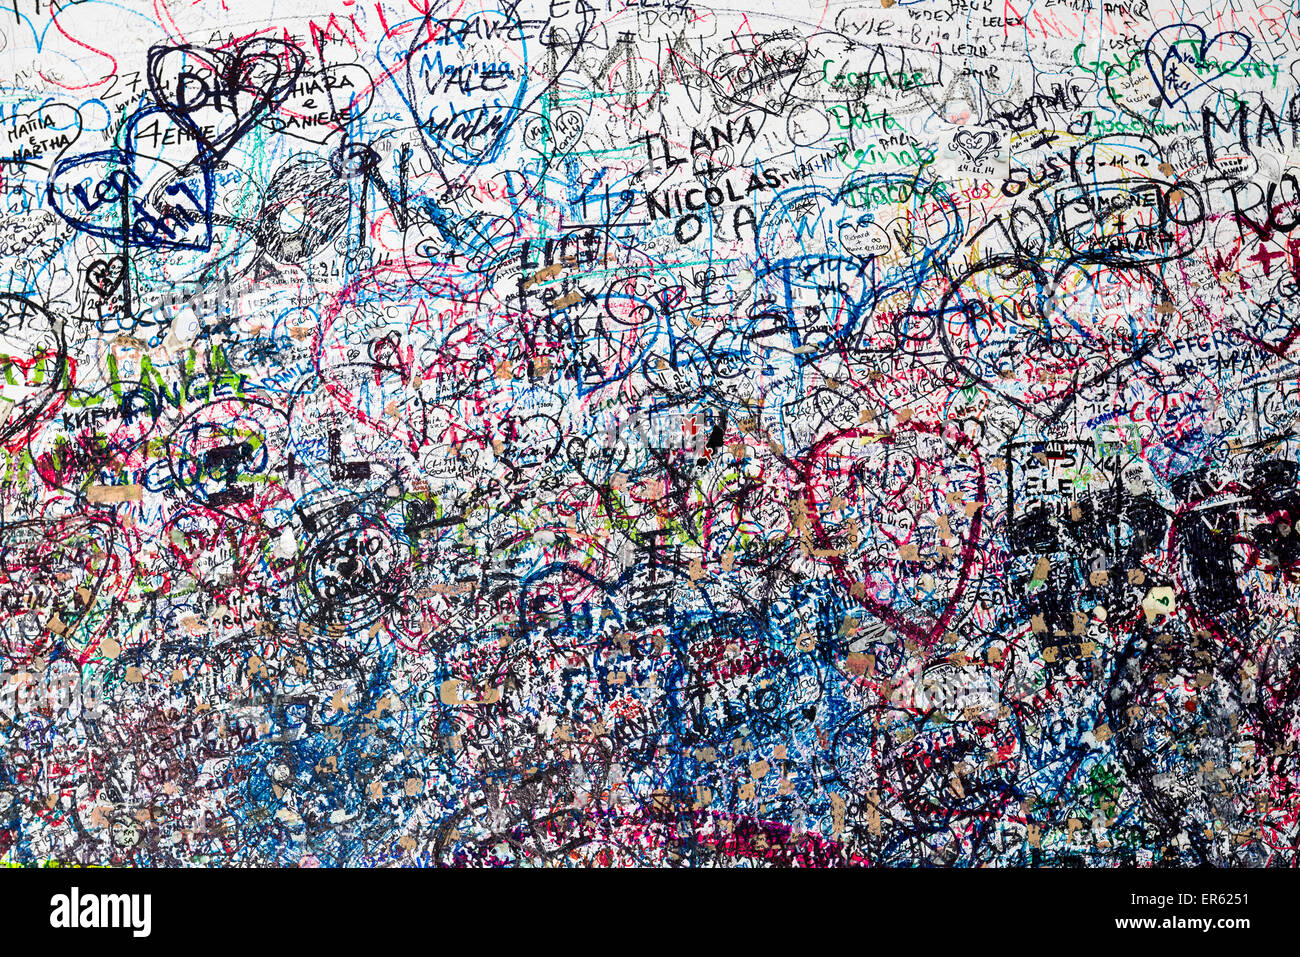 Des milliers de voeux d'amour sont écrites sur le mur de la porte menant à la maison de Juliette, Vérone, Italie Banque D'Images